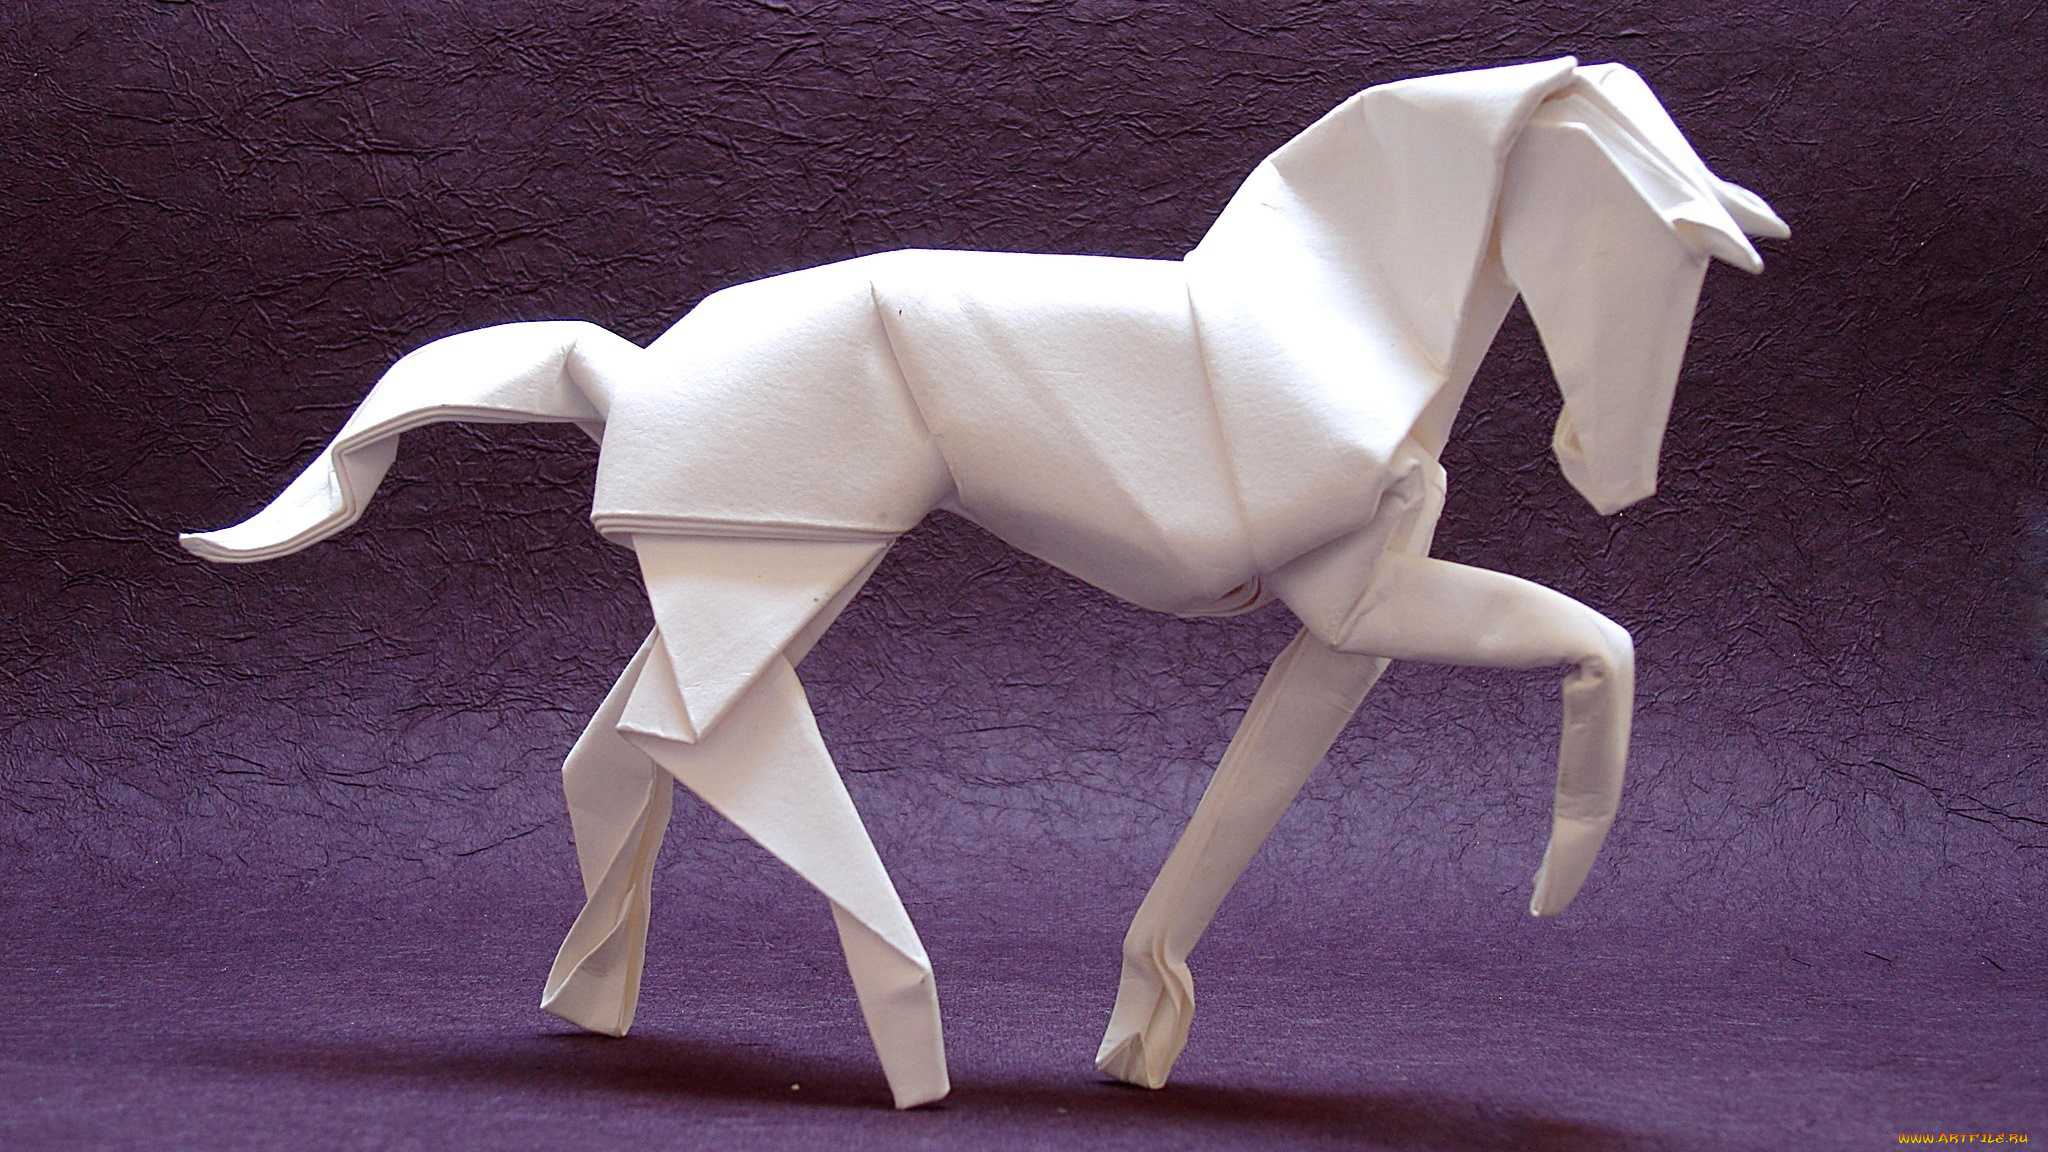 Изготовить простую фигурку лошадки выполненную в технике оригами можно быстро даже если нет навыков и опыта в данном виде искусства достаточно следовать описанию и схеме